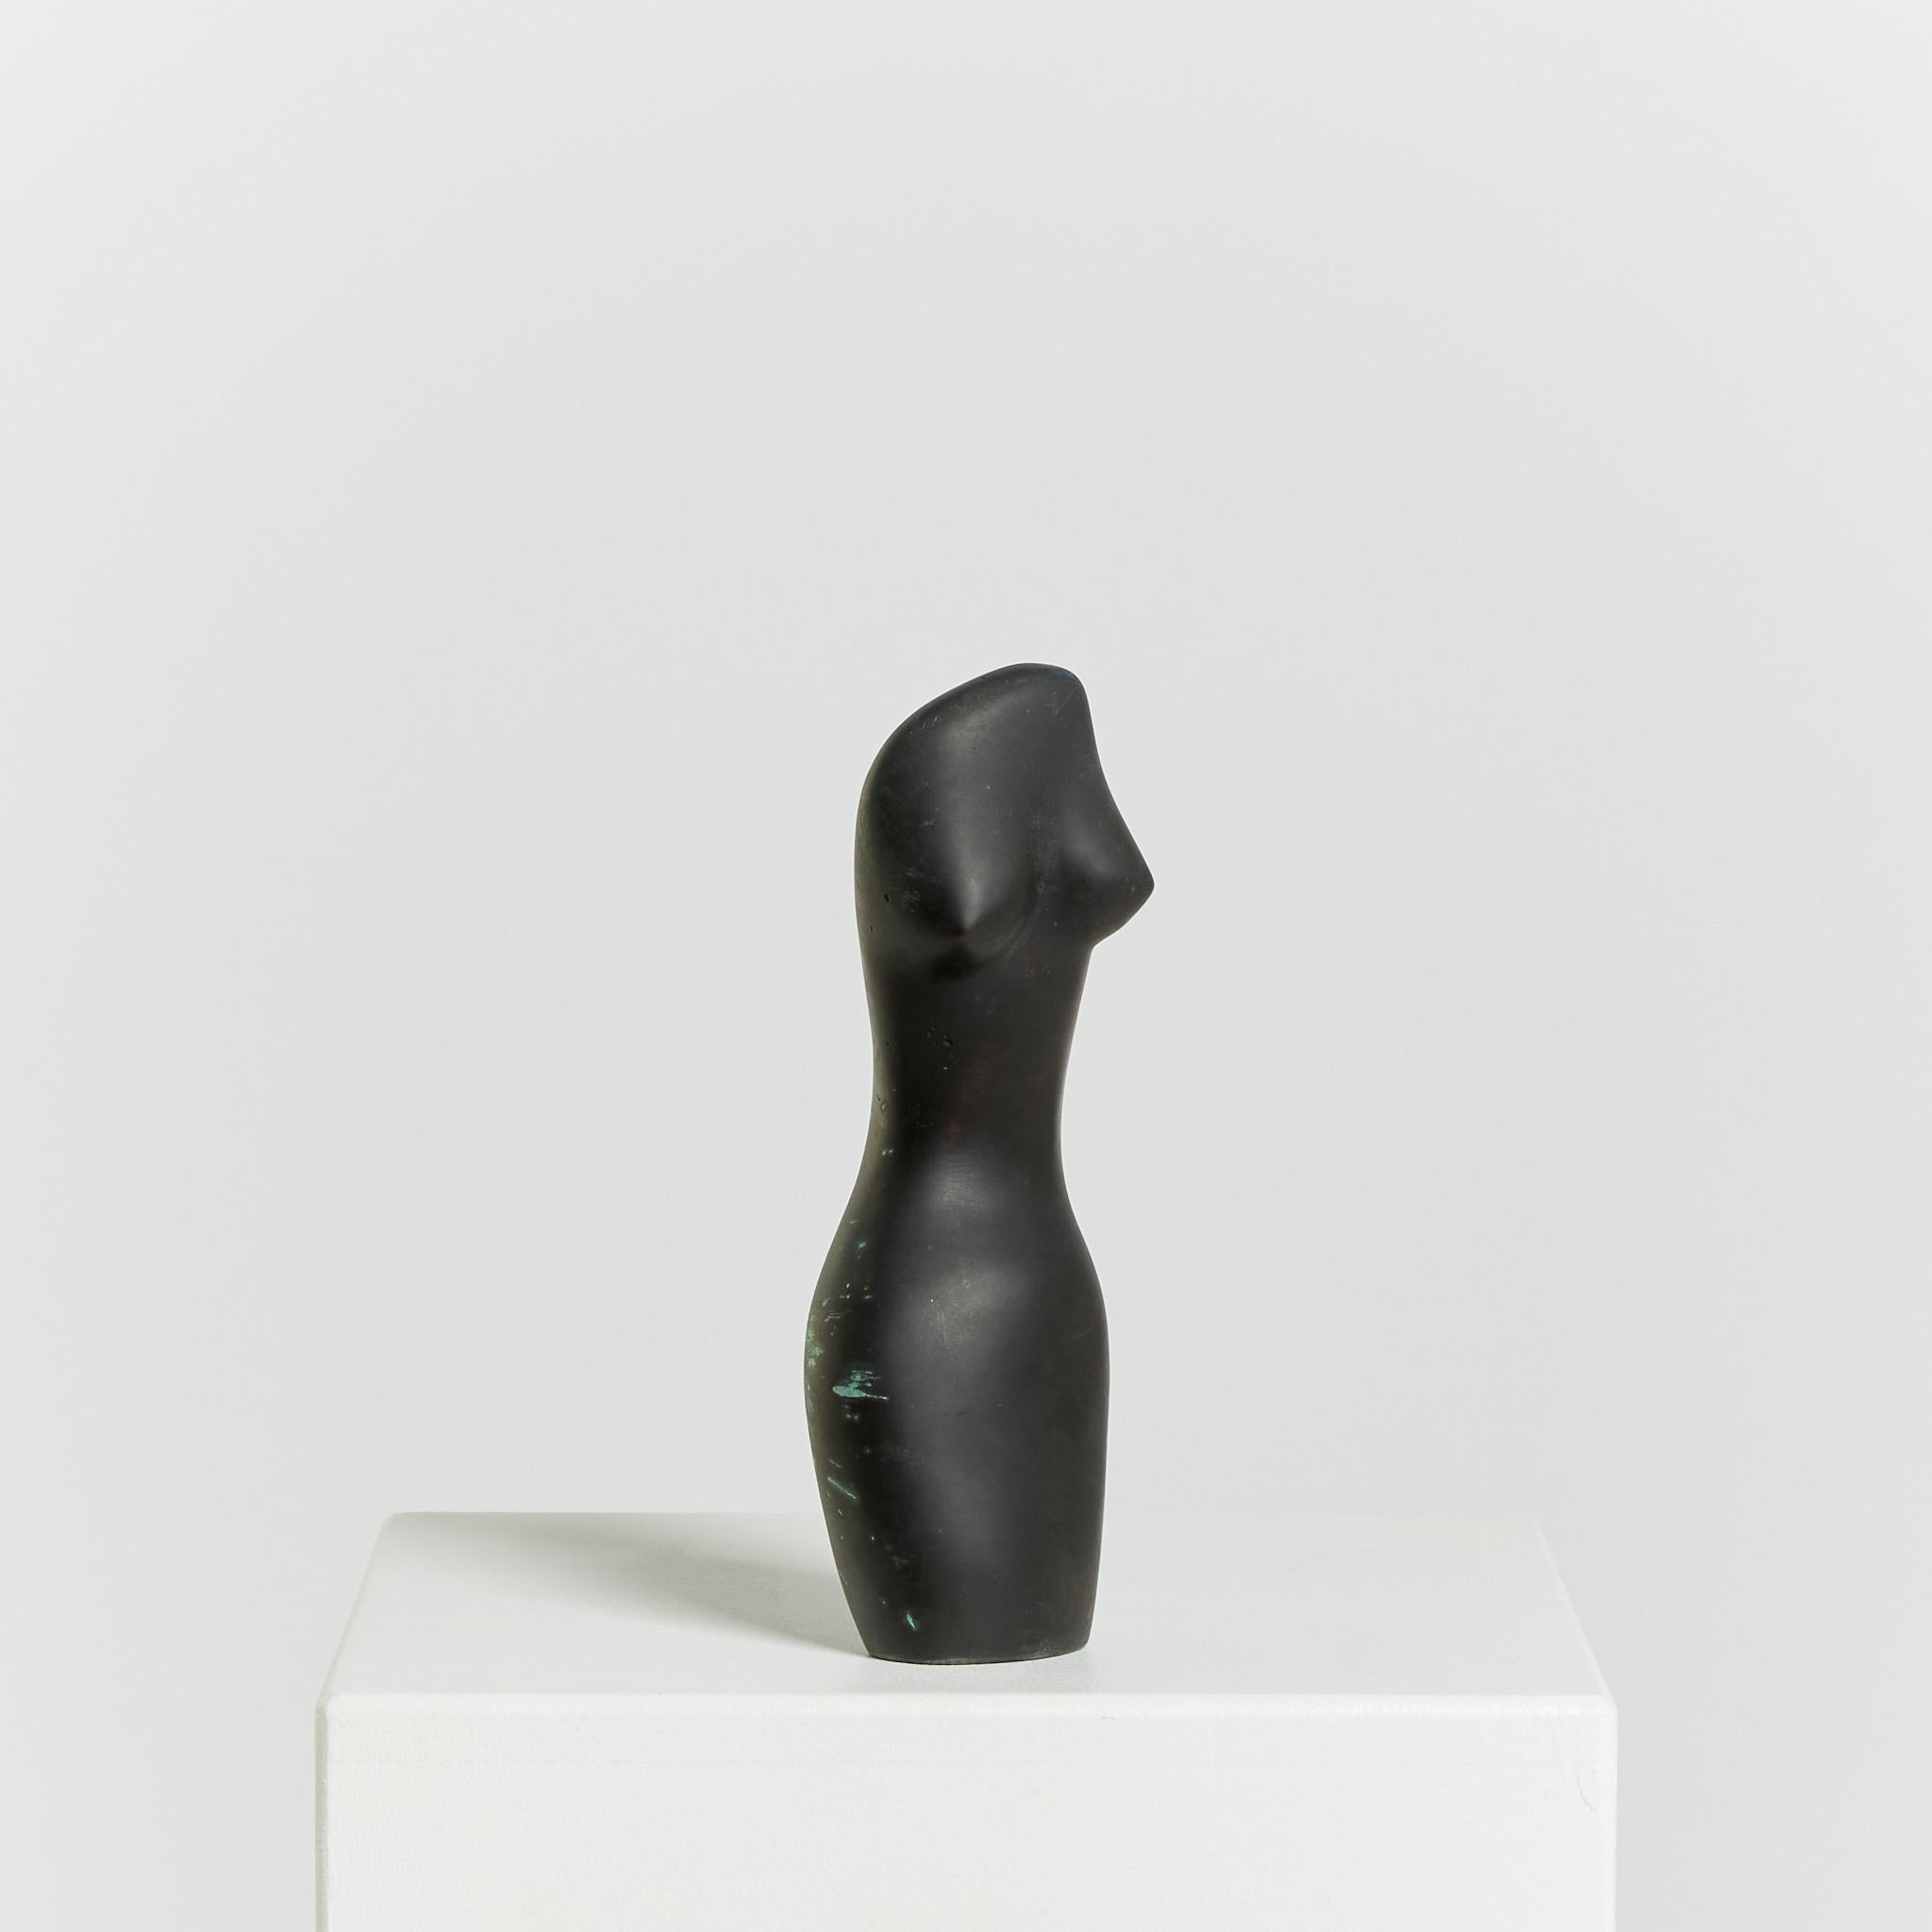 Ce torse féminin abstrait est réalisé en bronze et présente une touche de vert-de-gris. 

Artiste : Inconnu 

Origine : Belgique

Période : Circa 1970's 

Dimensions : H24 x W9 x D6cm.